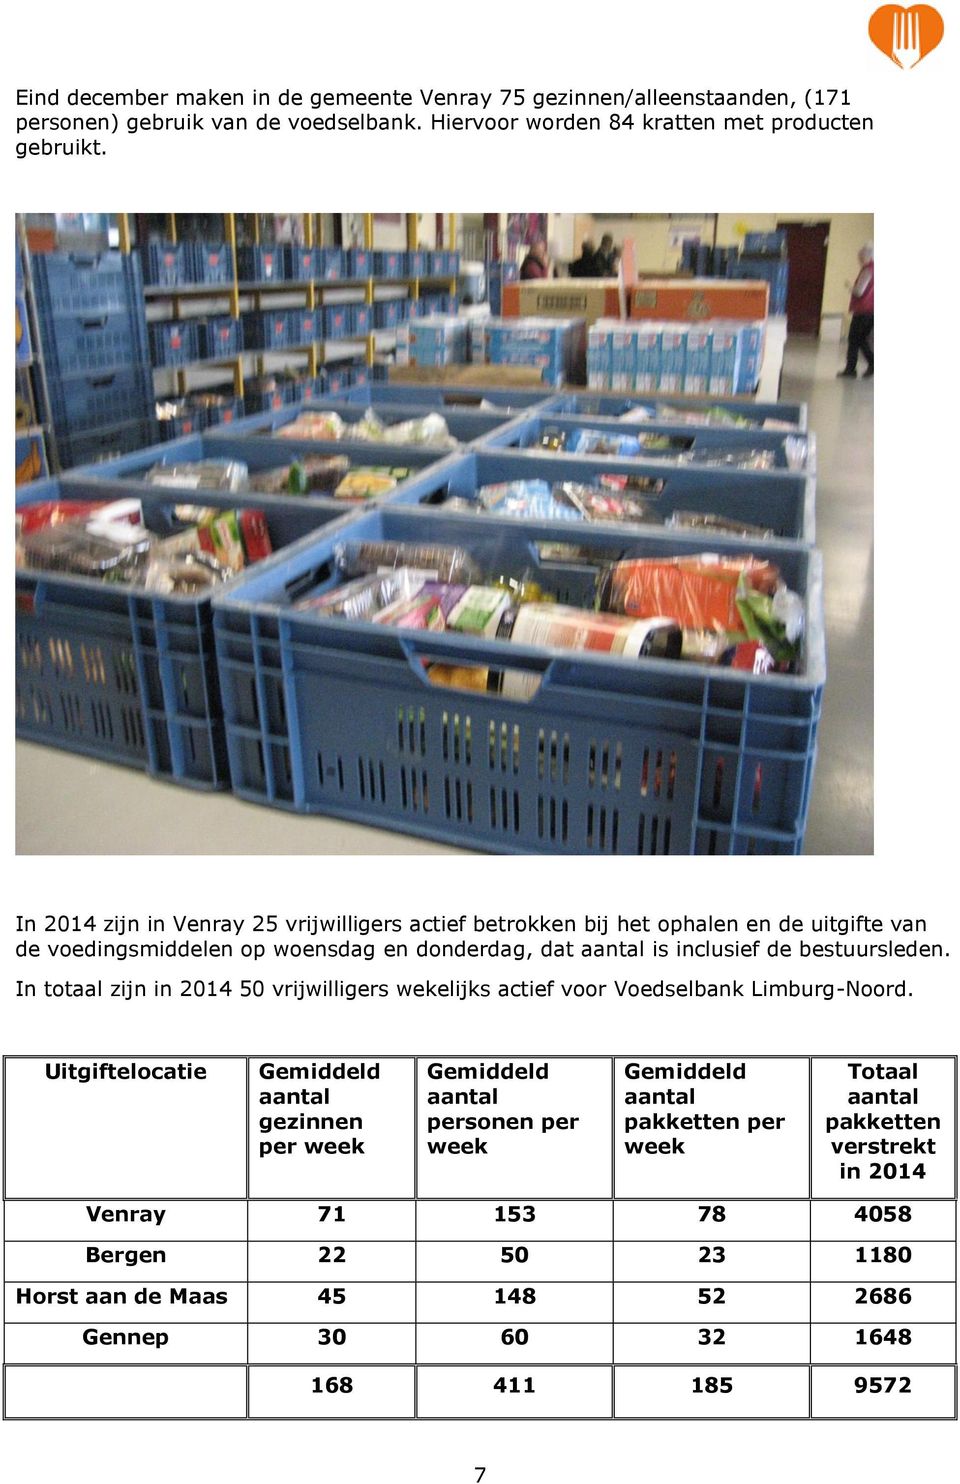 bestuursleden. In totaal zijn in 2014 50 vrijwilligers wekelijks actief voor Voedselbank Limburg-Noord.